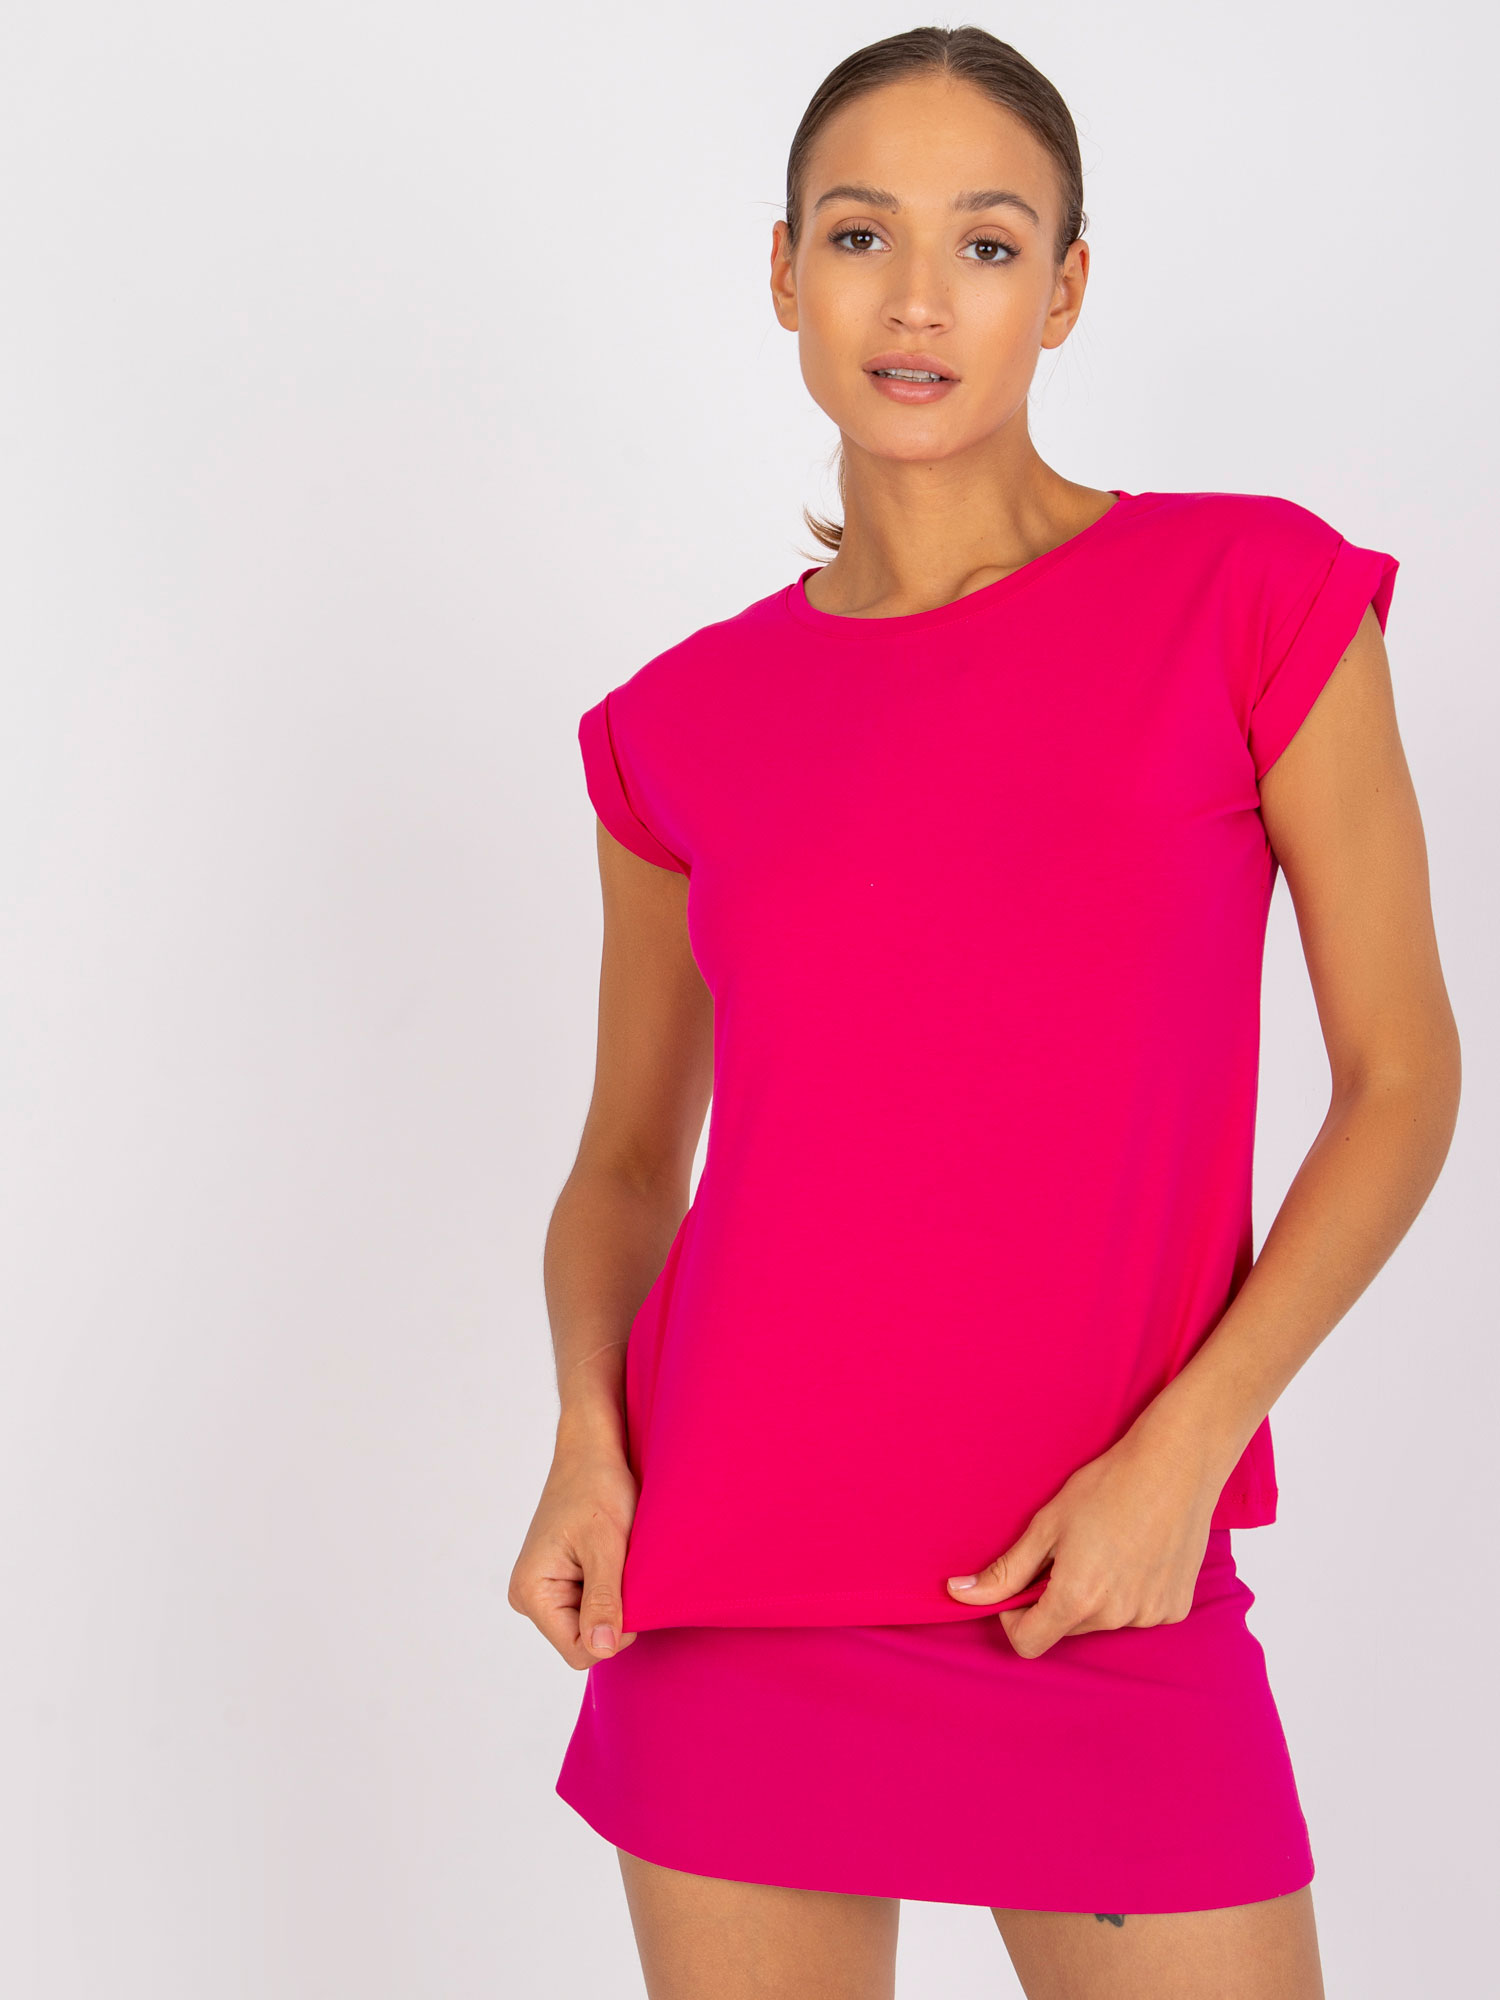 Růžové dámské tričko s krátkými rukávy RV-TS-4833.30P-fuchsia Velikost: L